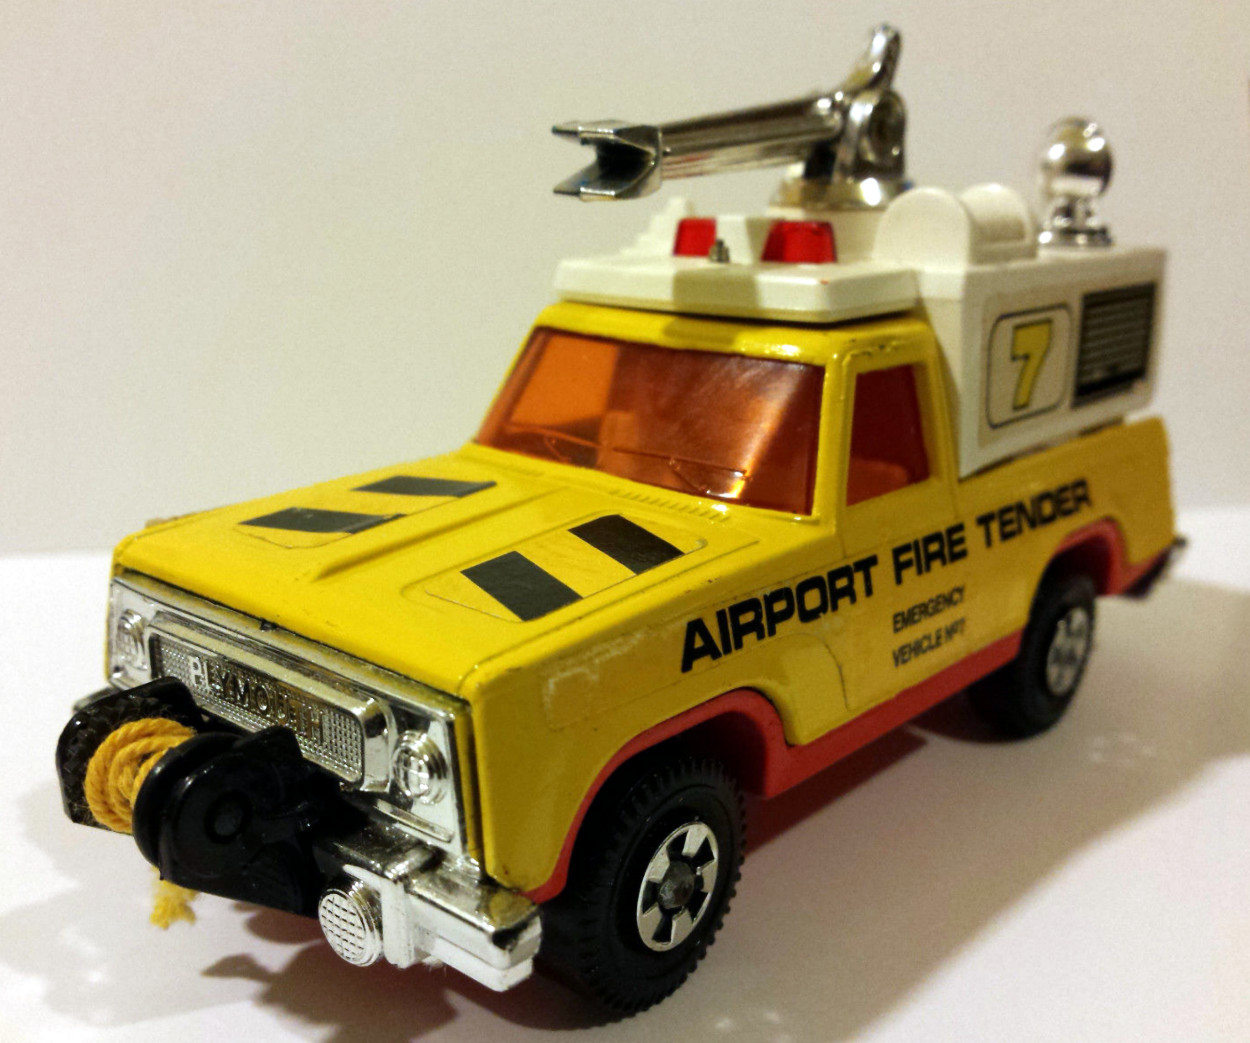 Airport Fire Tender (K-75) | Matchbox Cars Wiki | Fandom